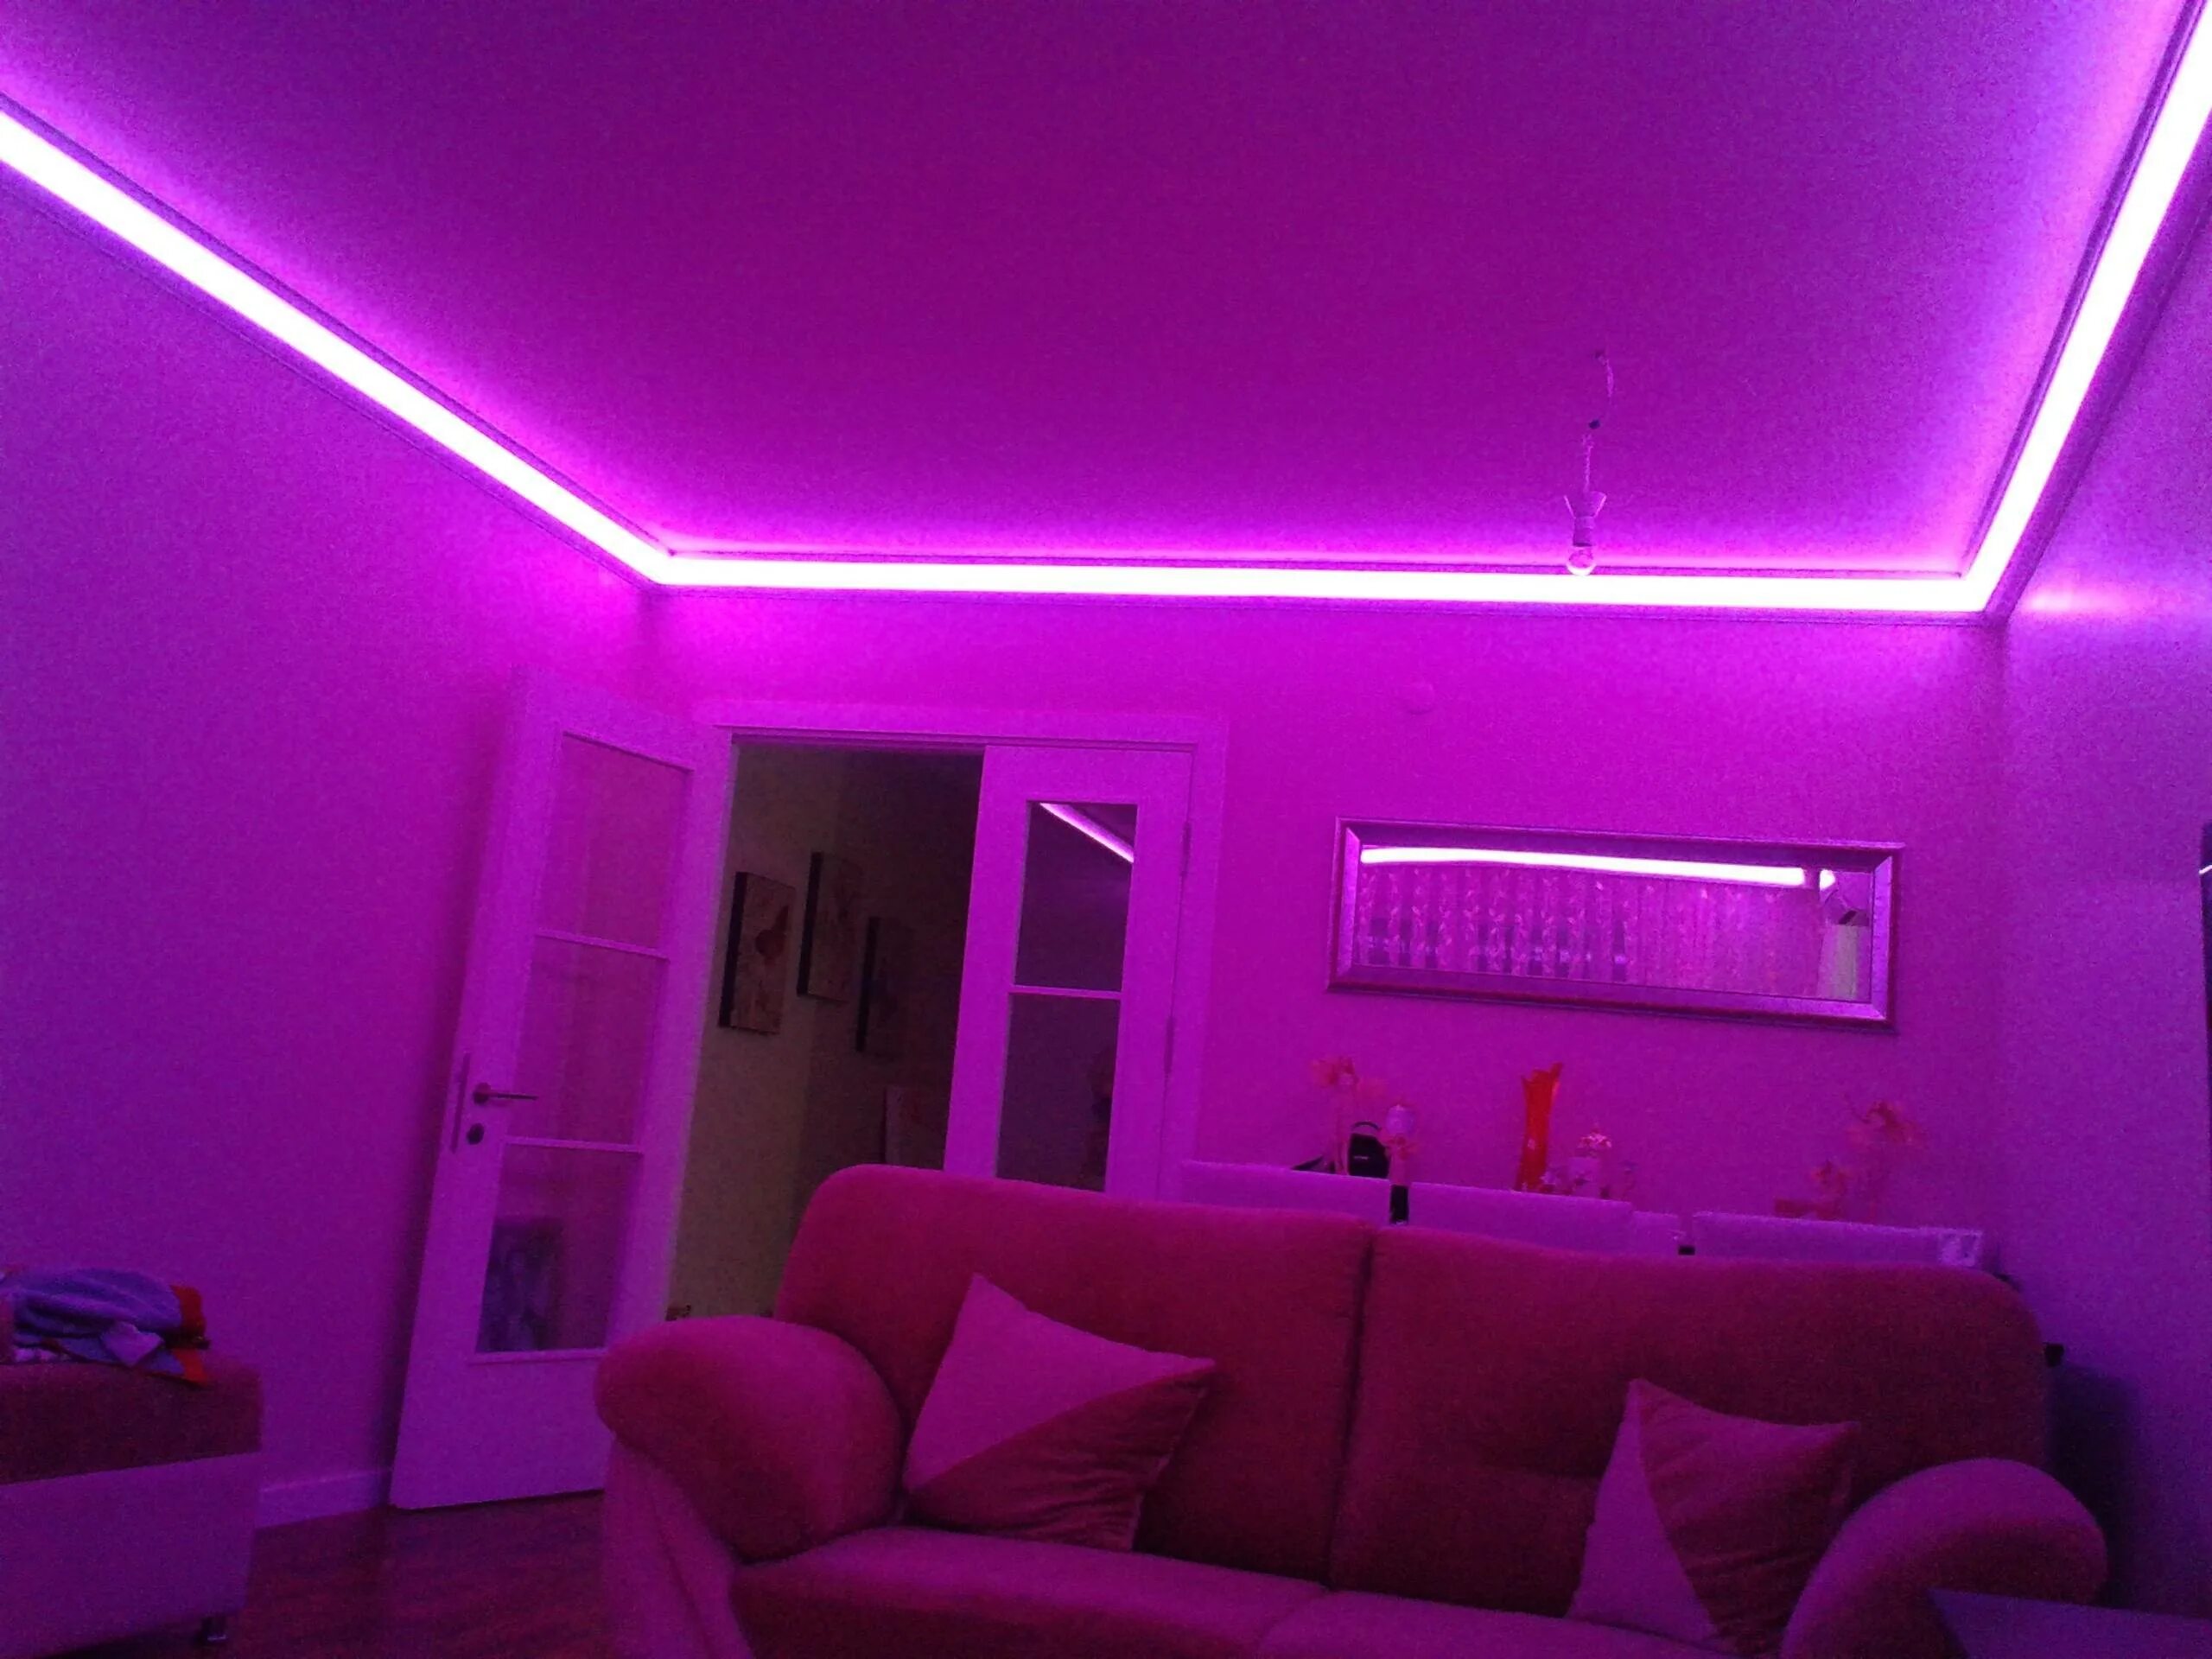 Светодиодная РГБ лента на потолке. Фиолетовая РГБ подсветка. РГБ лента фиолетовая. Неоновые РЖБ ленты. Как делают неоновые